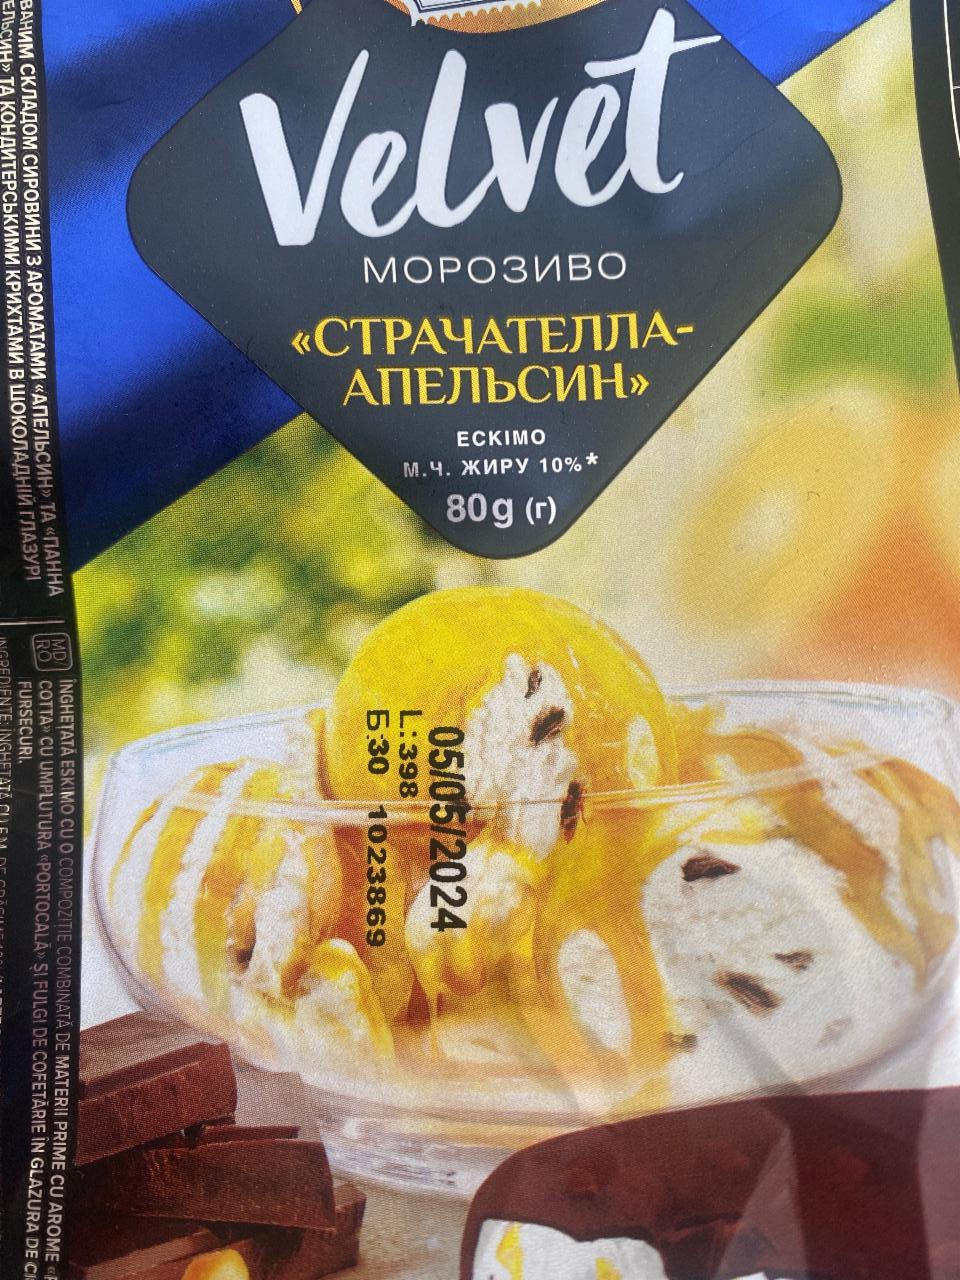 Фото - Мороженое 10% апельсин-страчателла Velvet